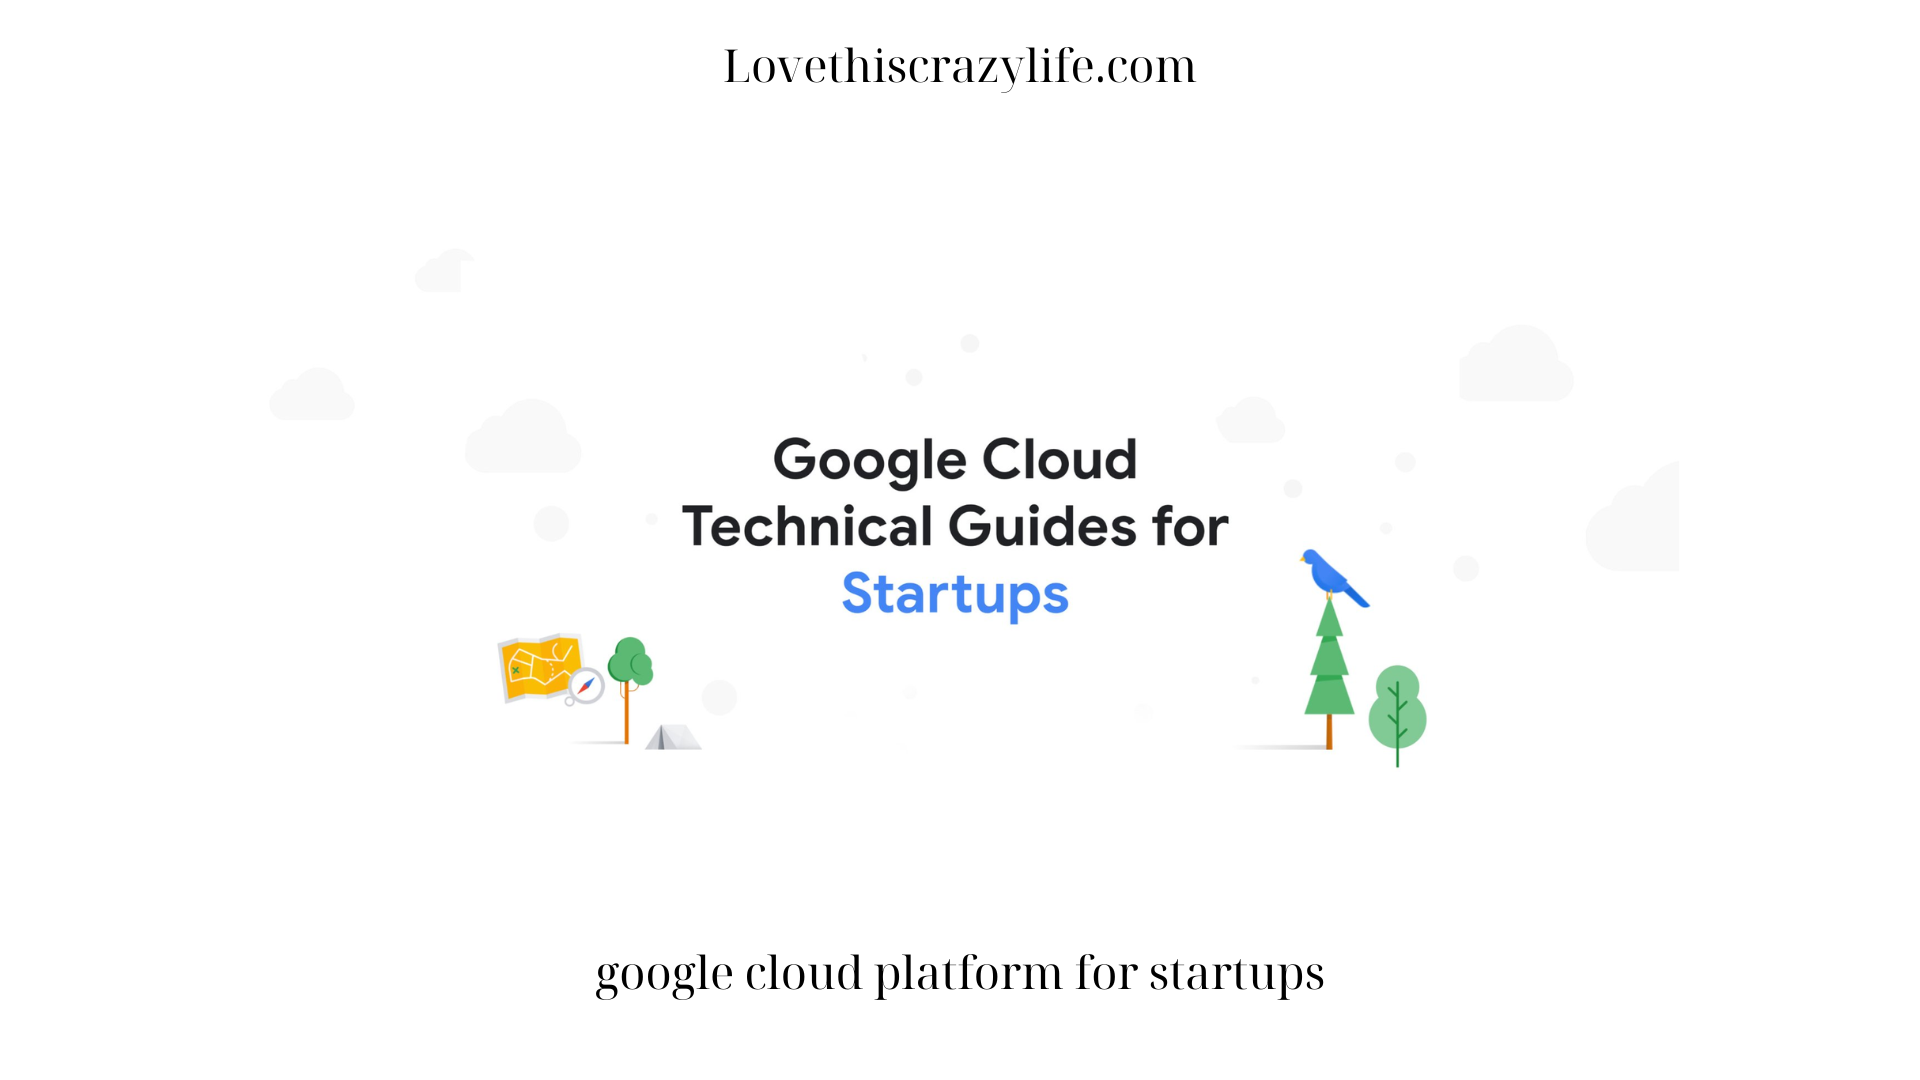 Google cloud platform for startups